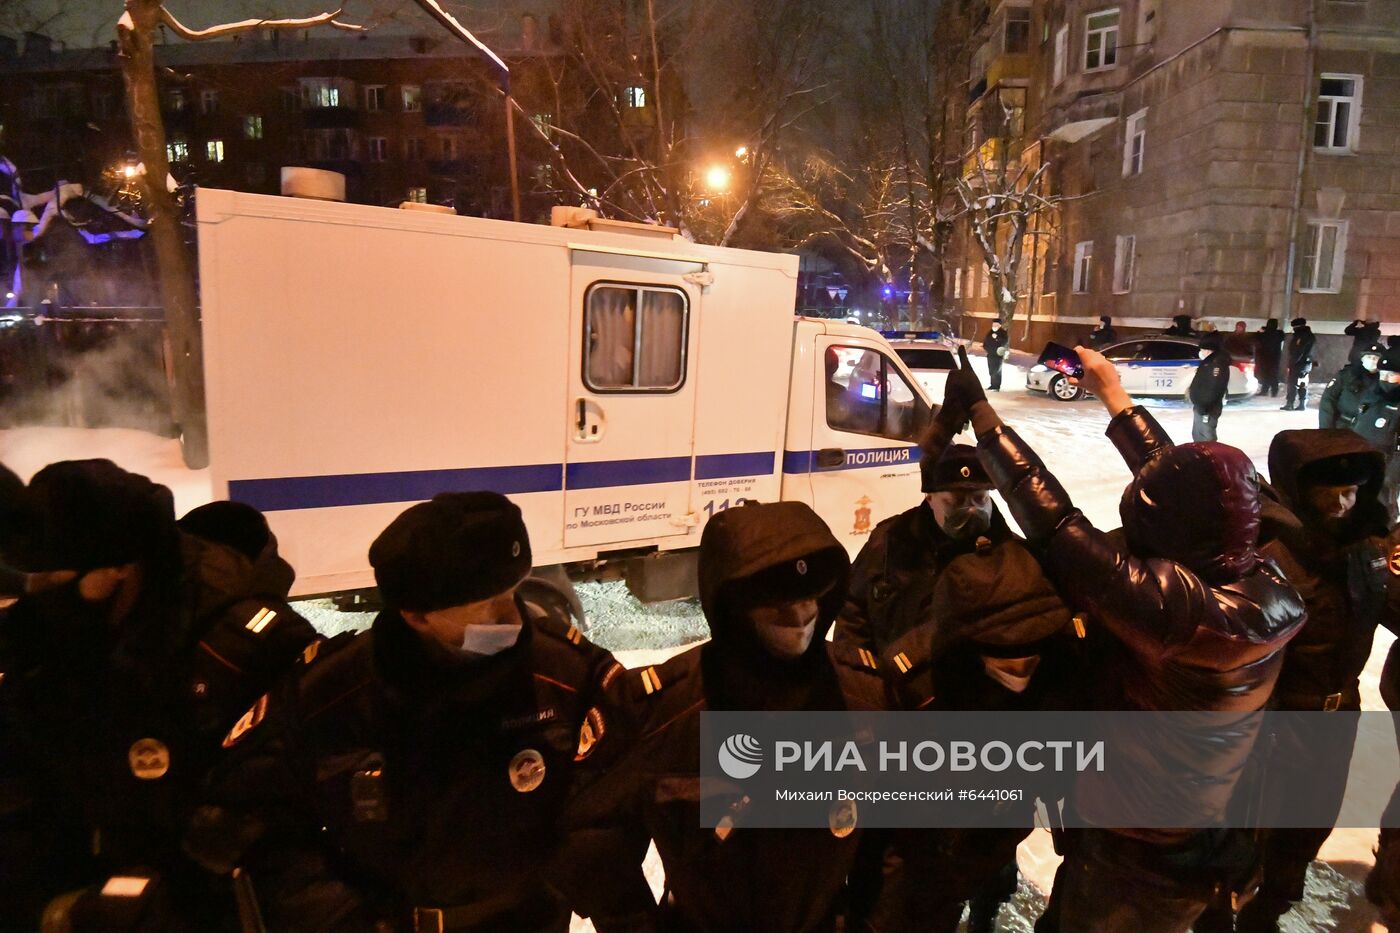 Отдел полиции, где находится задержанный А. Навальный